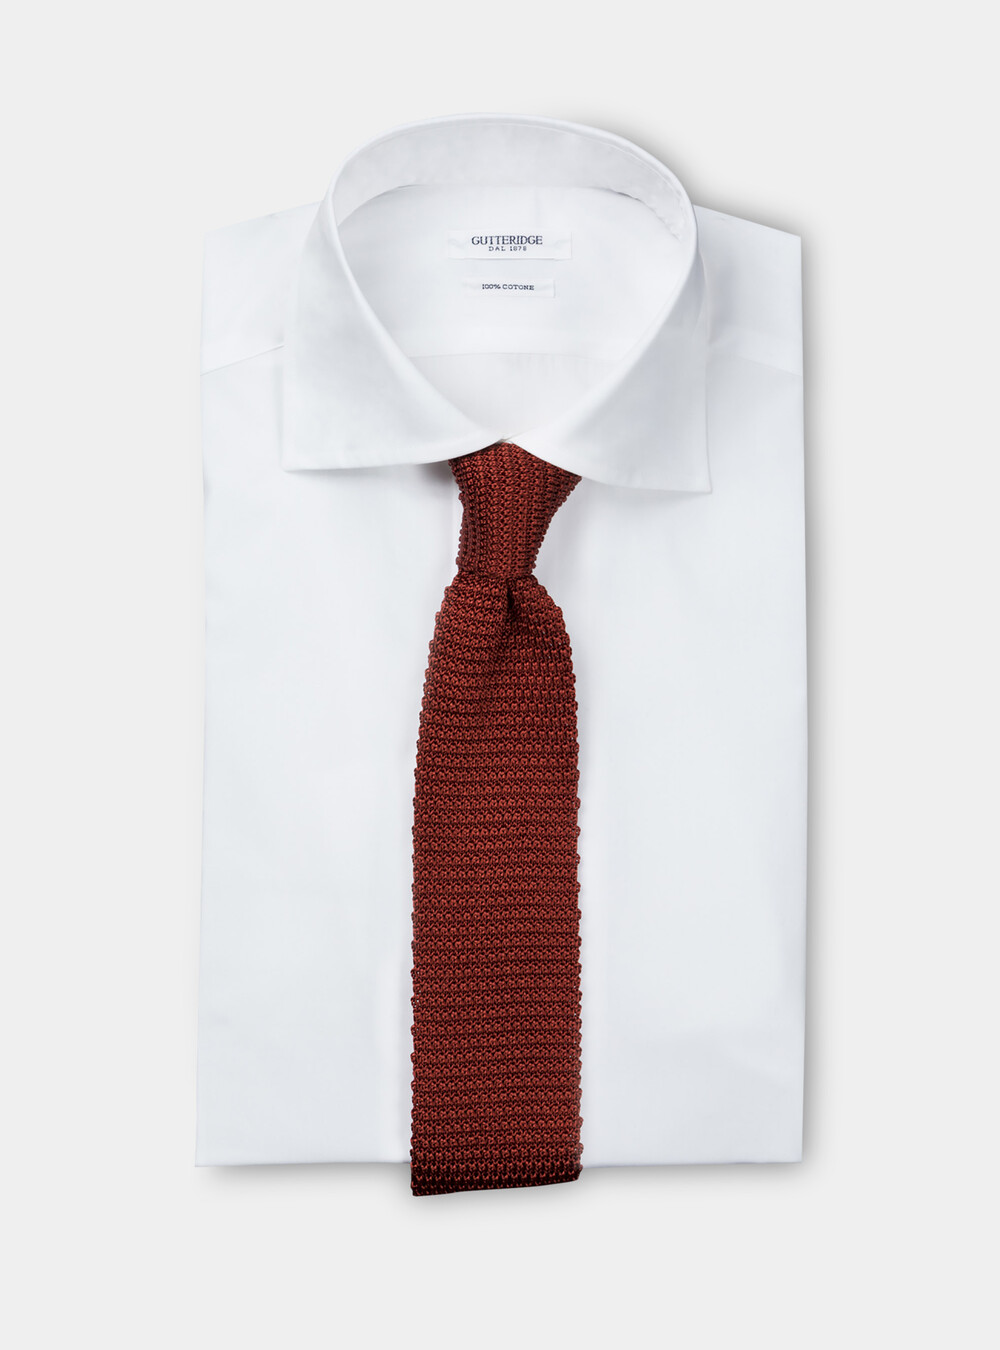 Cravate en tricot 100% soie